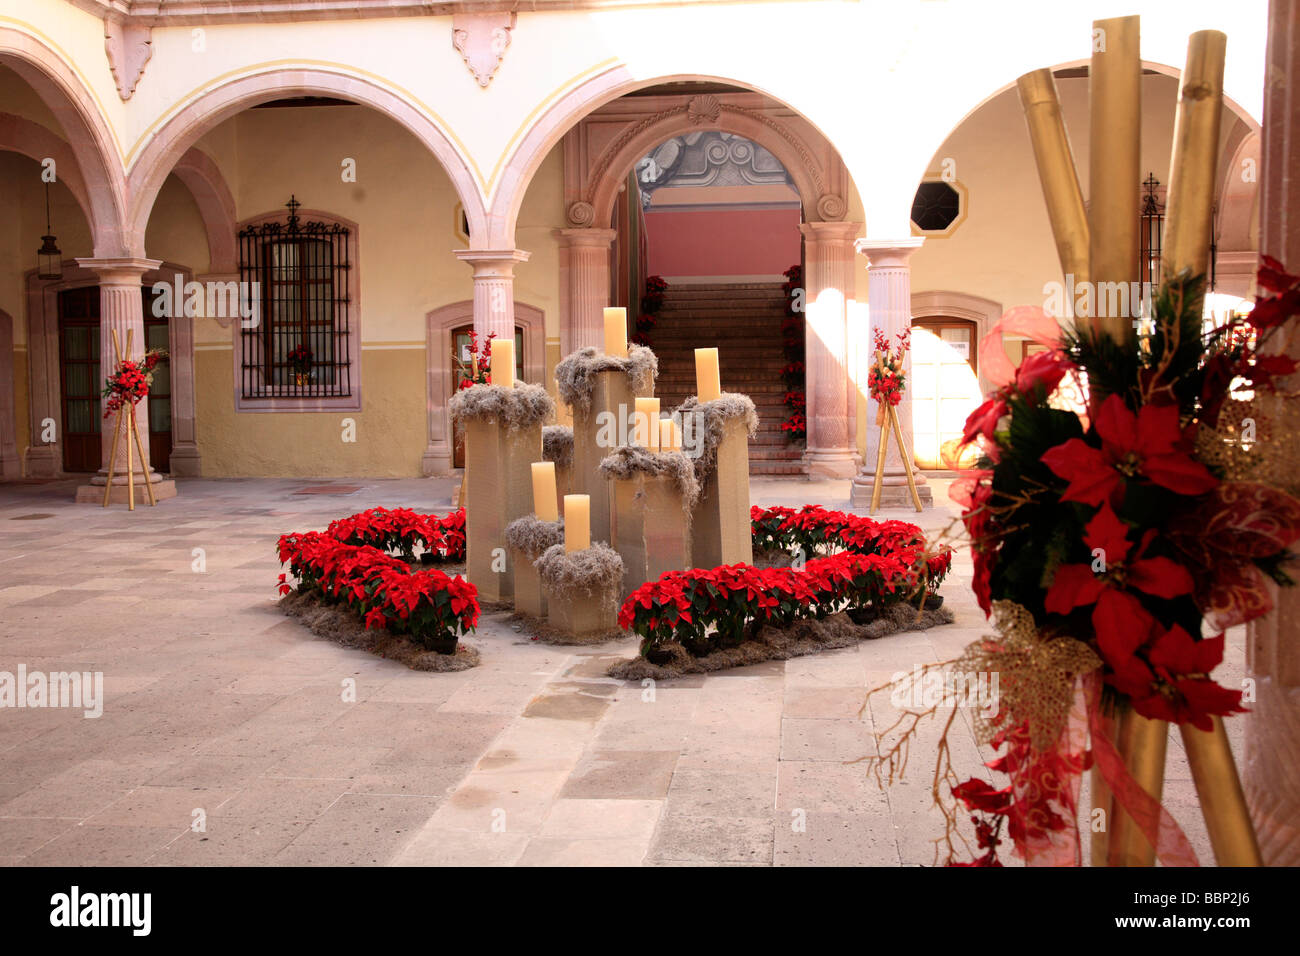 Zacatecas ville mexicaine de la veille de Noël de l'architecture coloniale pittoresque bâtiment décoration bougies goberment Mexique Voyager Banque D'Images